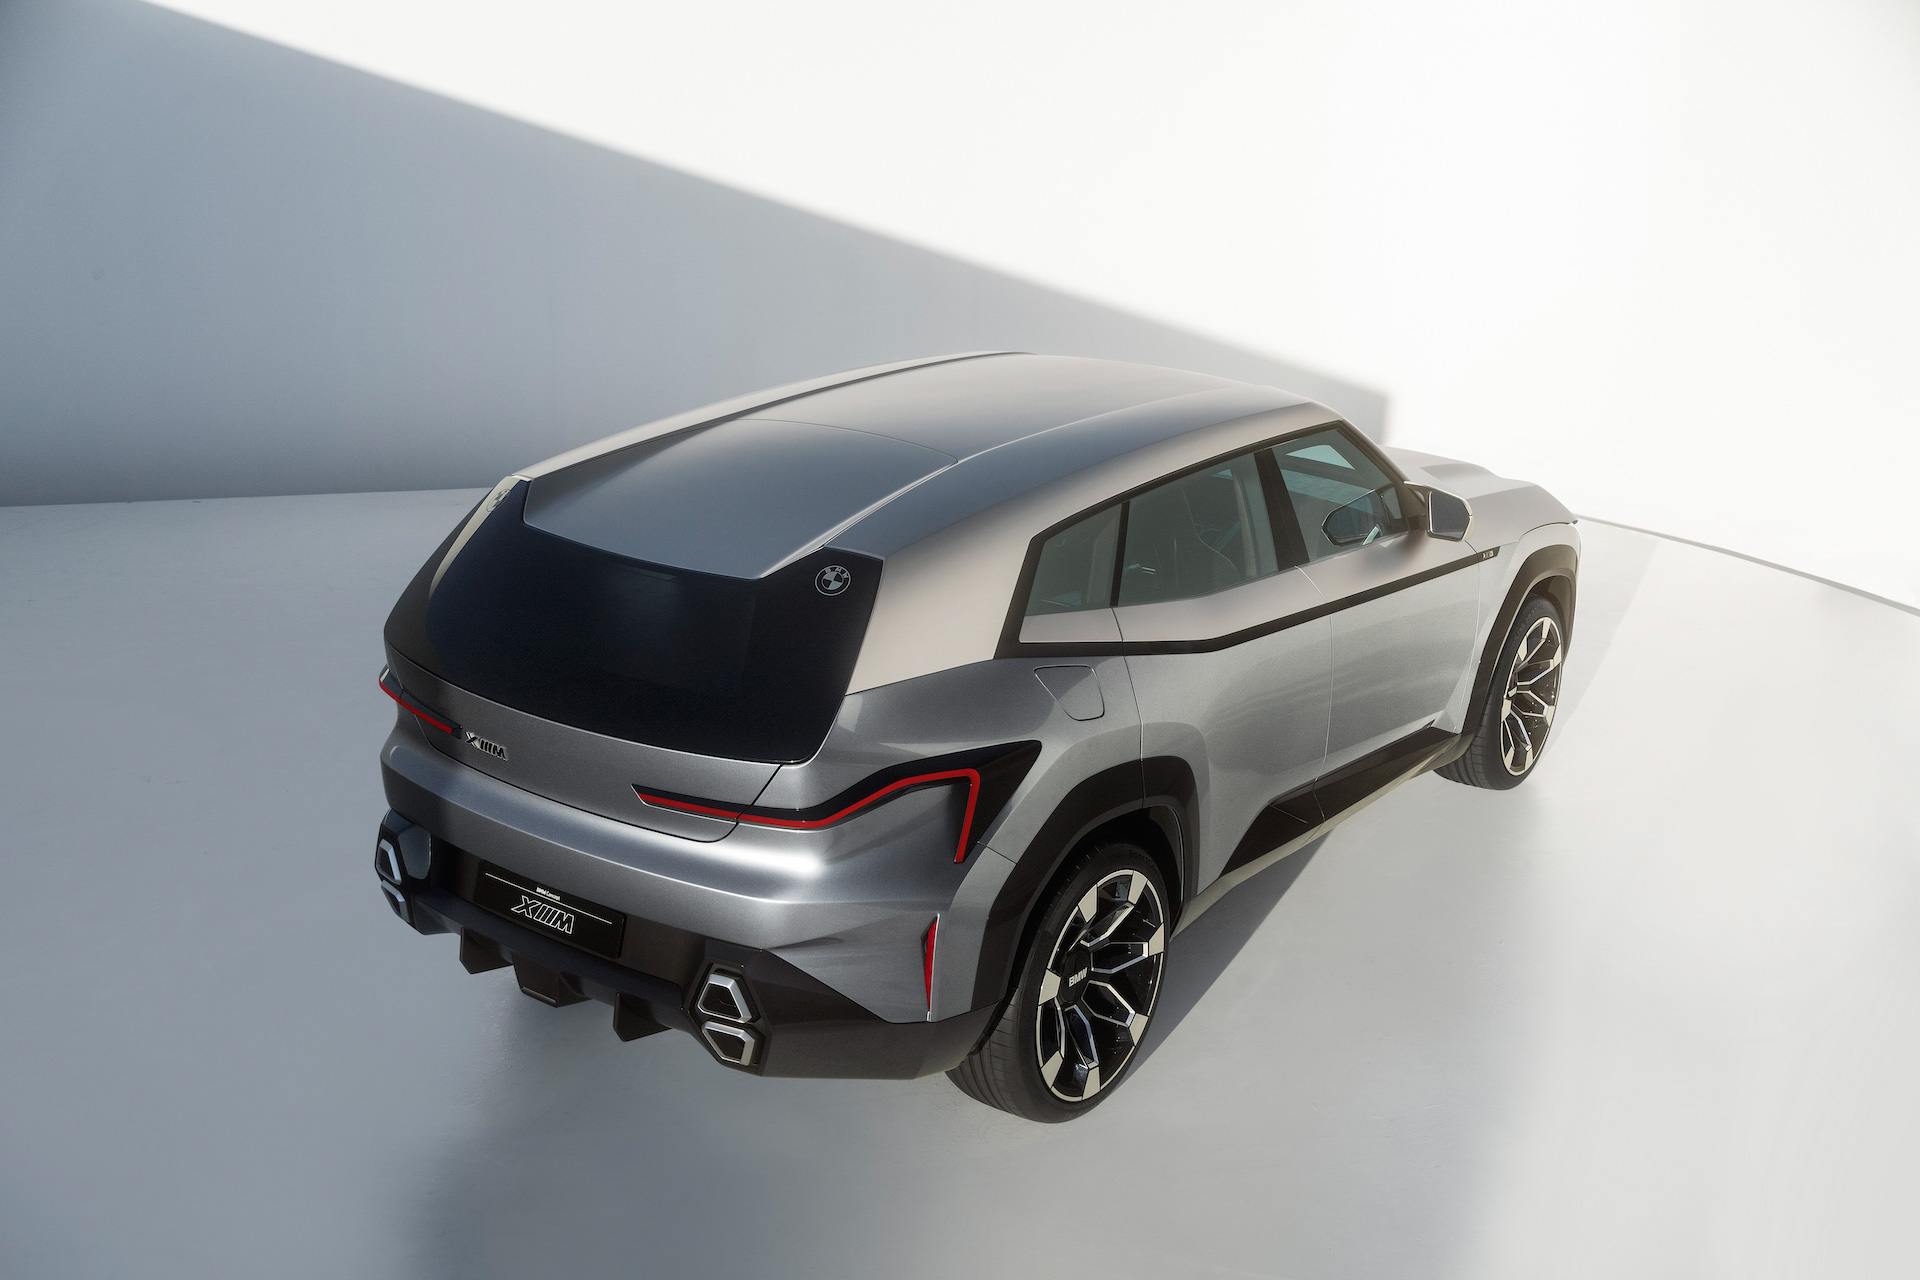 Lộ cấu hình khủng long BMW XM sắp ra mắt: Động cơ lai V8 tăng áp kép hoàn toàn mới là yếu tố bất ngờ - Ảnh 2.